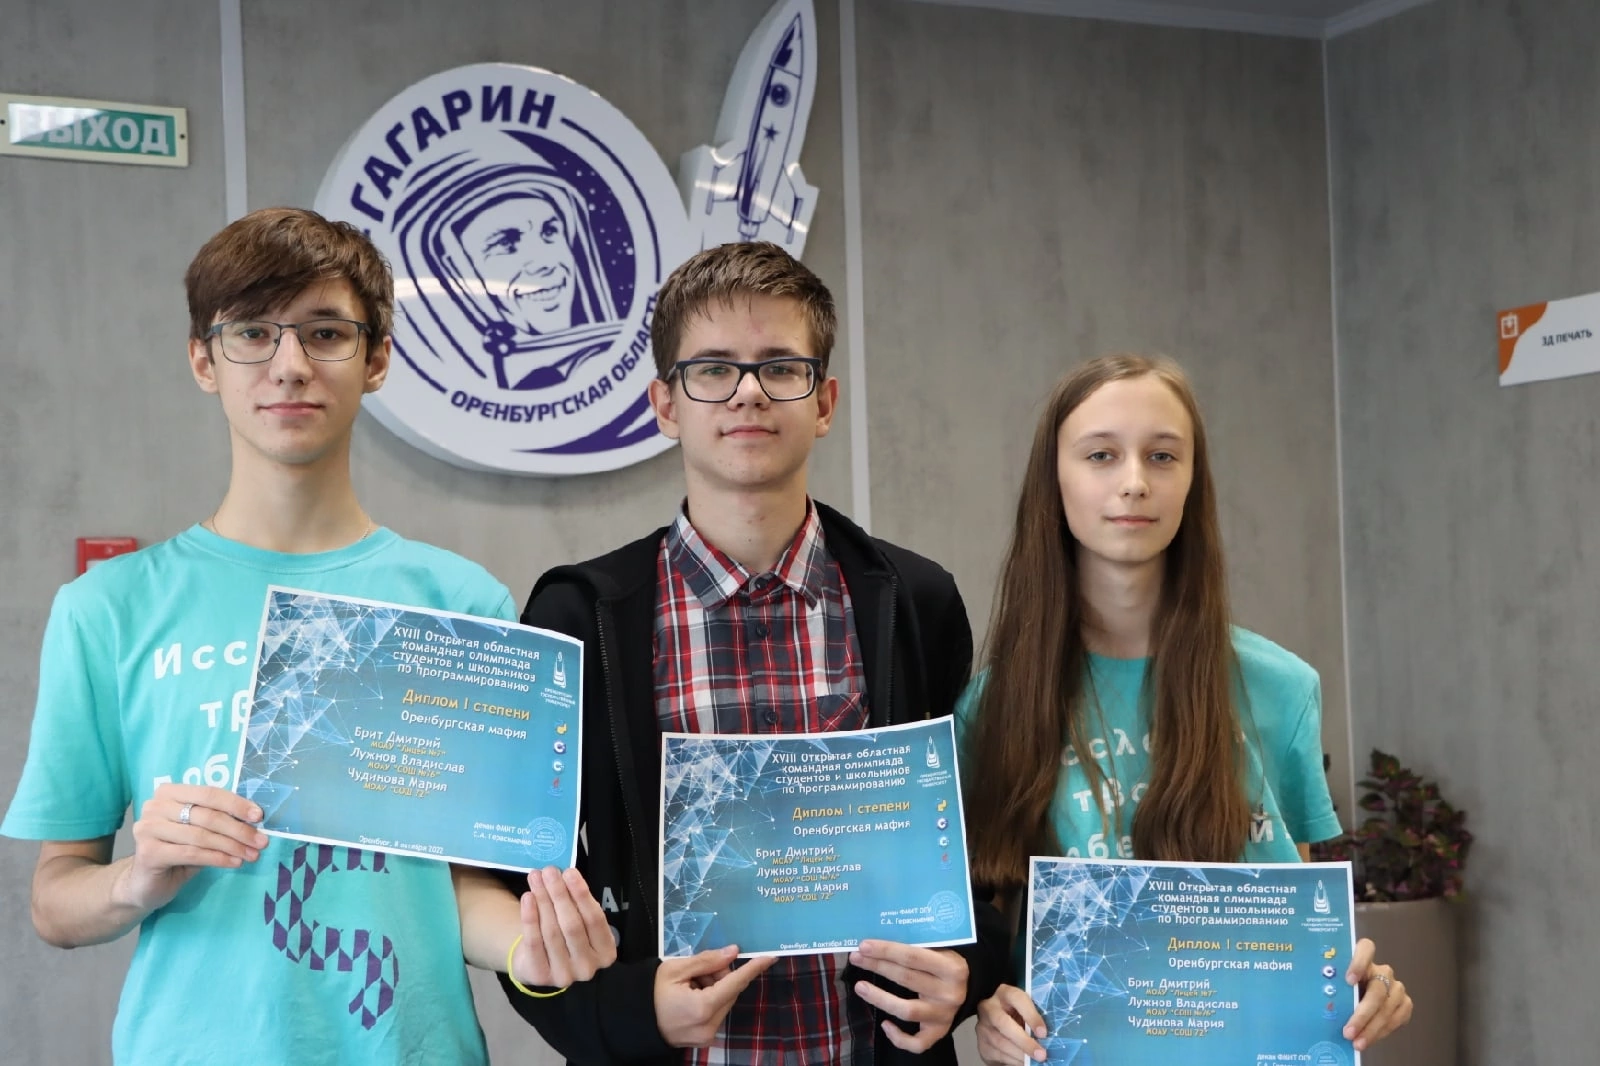 XVIII Открытая областная командная олимпиада студентов и школьников по программированию.